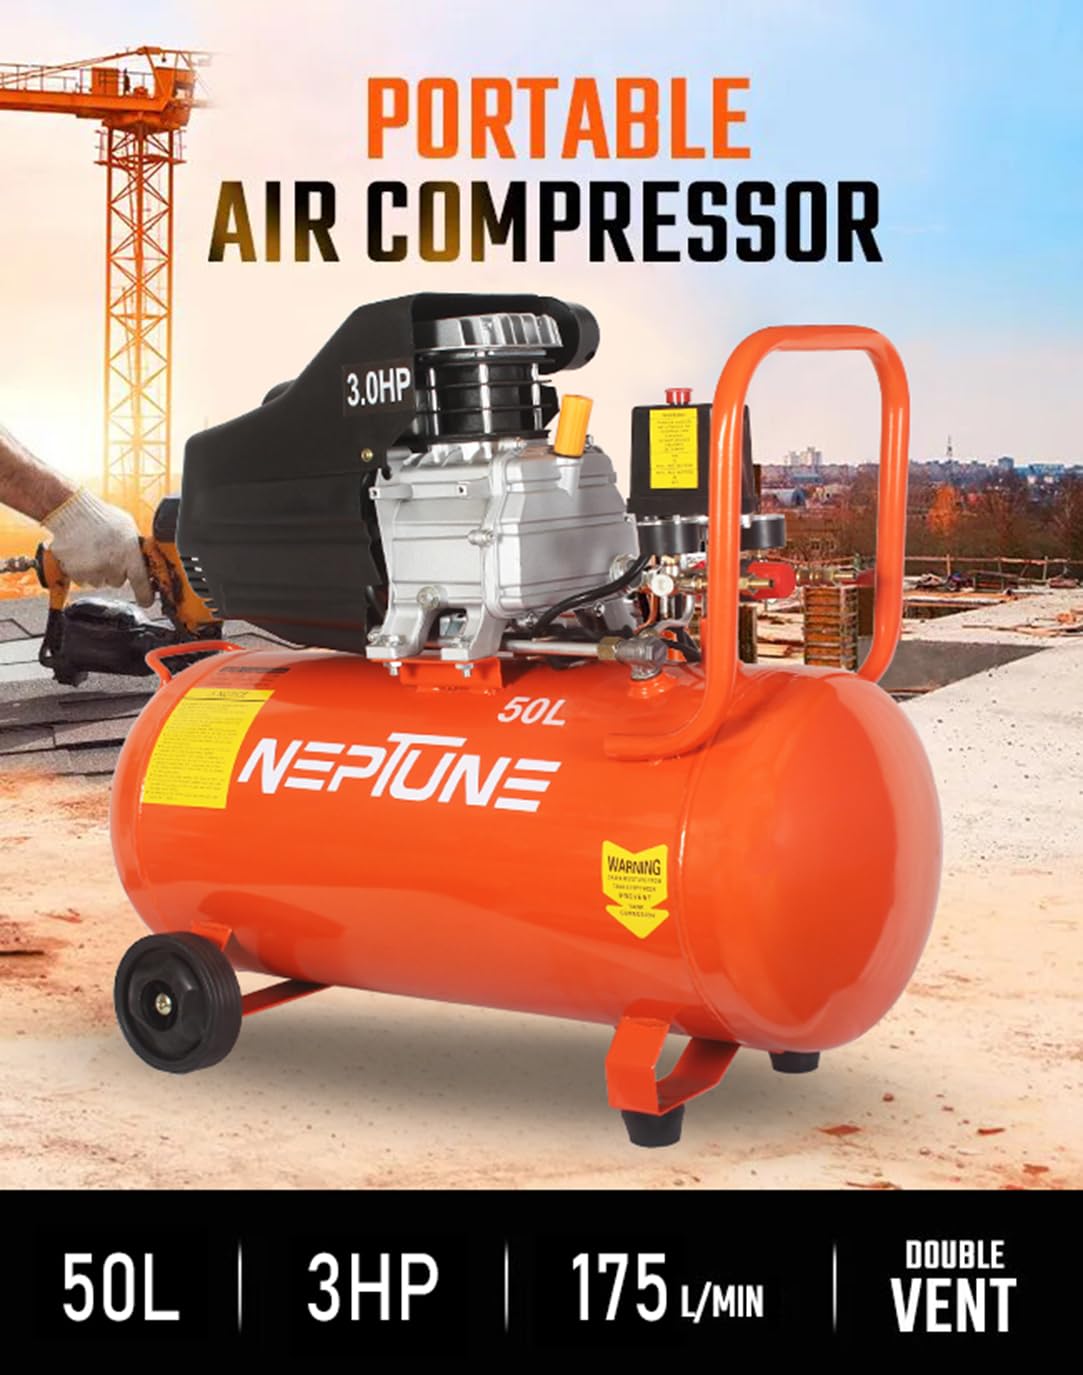 Portable Air Compressor, 50 Litre air compressor